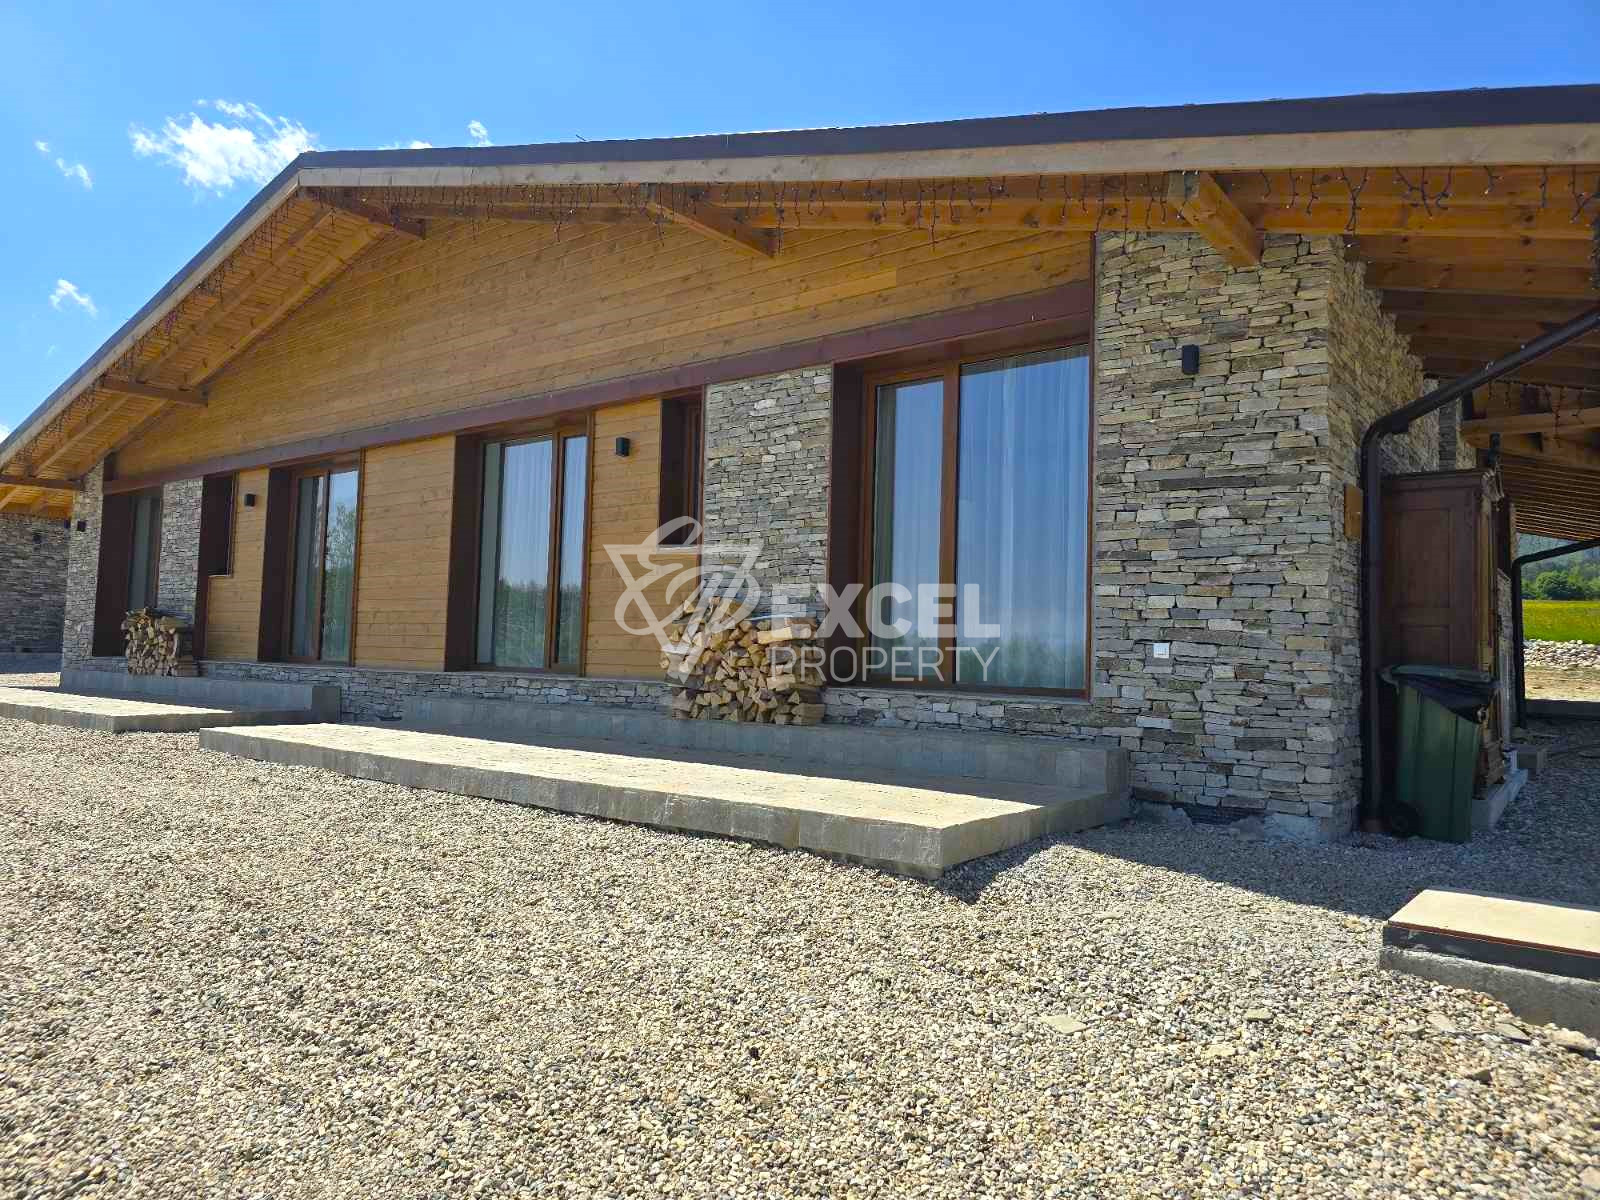 Едноетажна къща в алпийски стил за продажба, в непосредствена близост до Пирин Голф